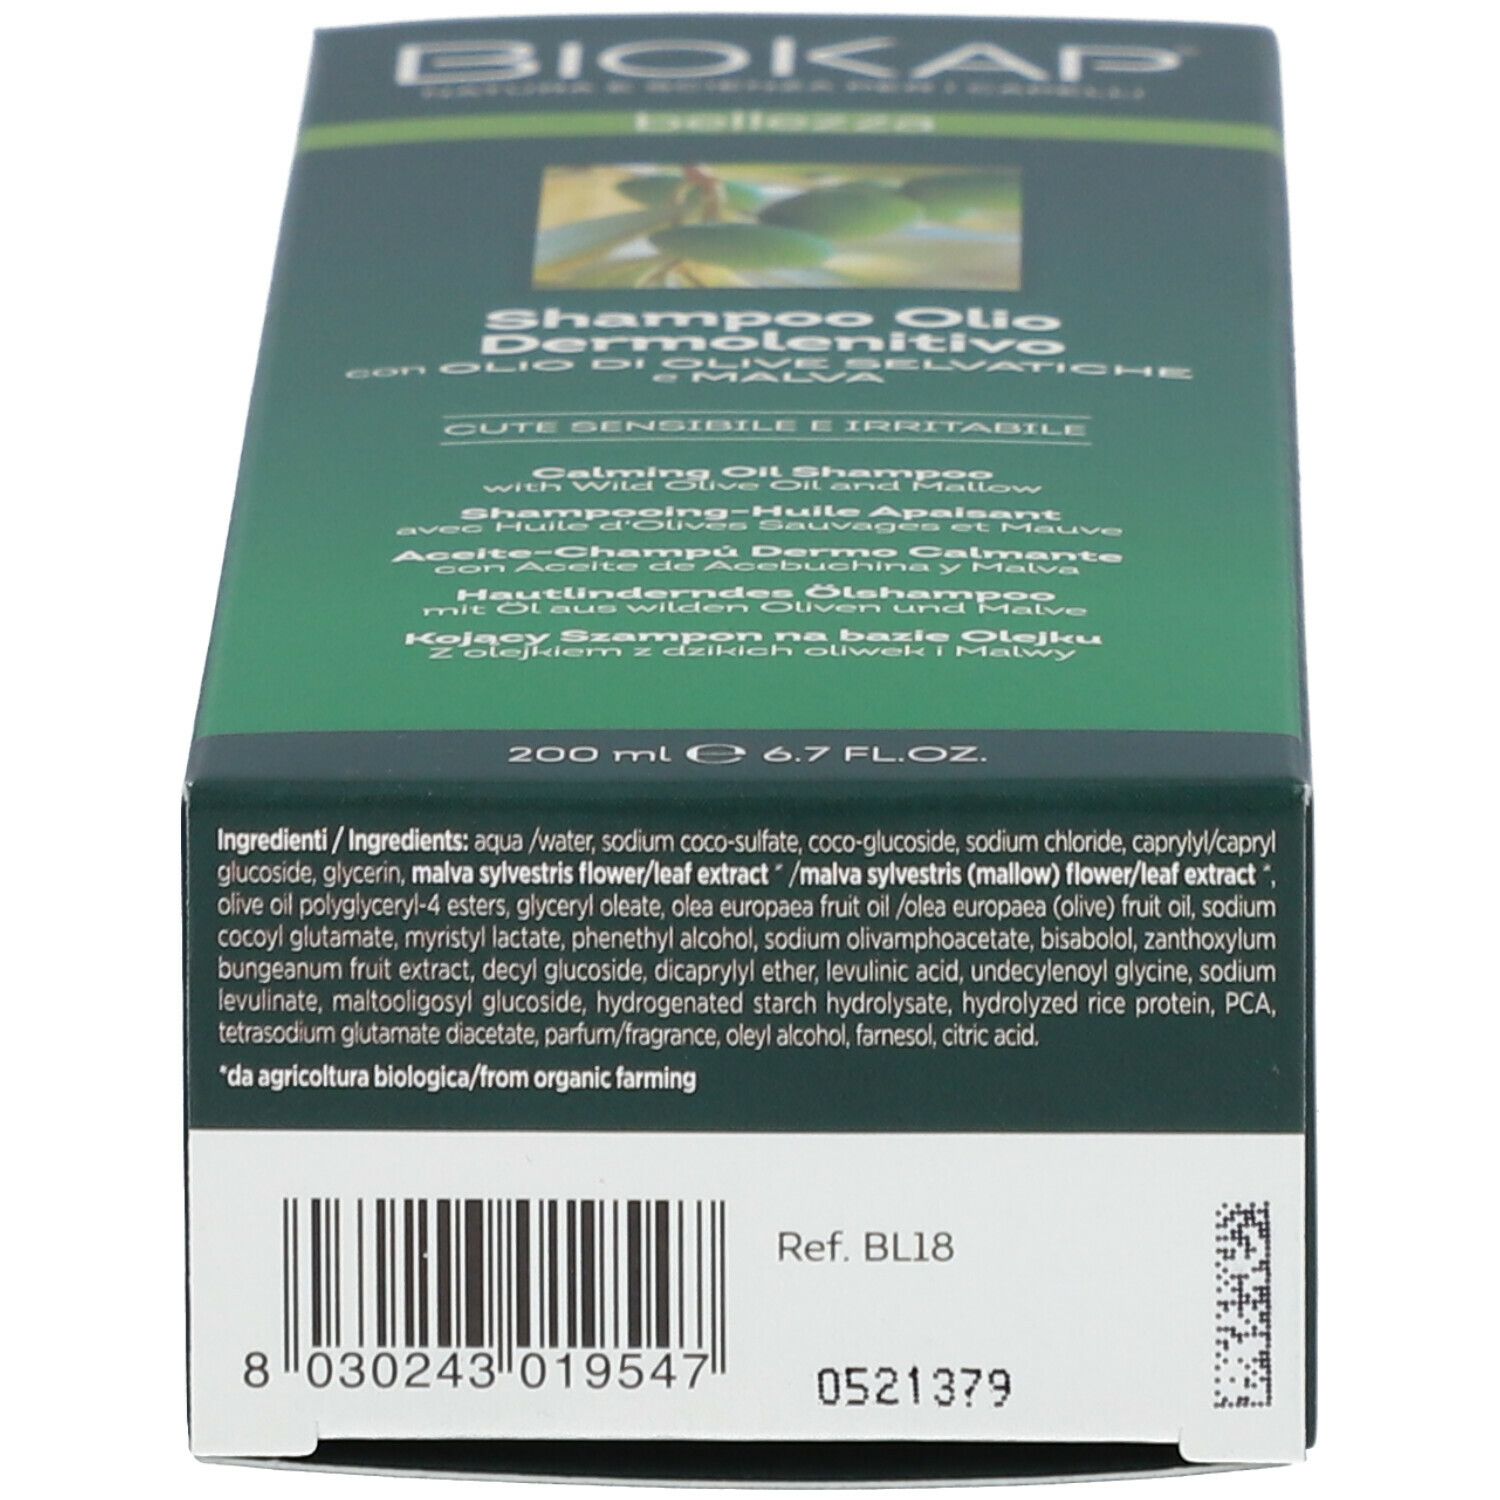 BIOSLINE BioKap® Shampoo Olio Dermolenitivo